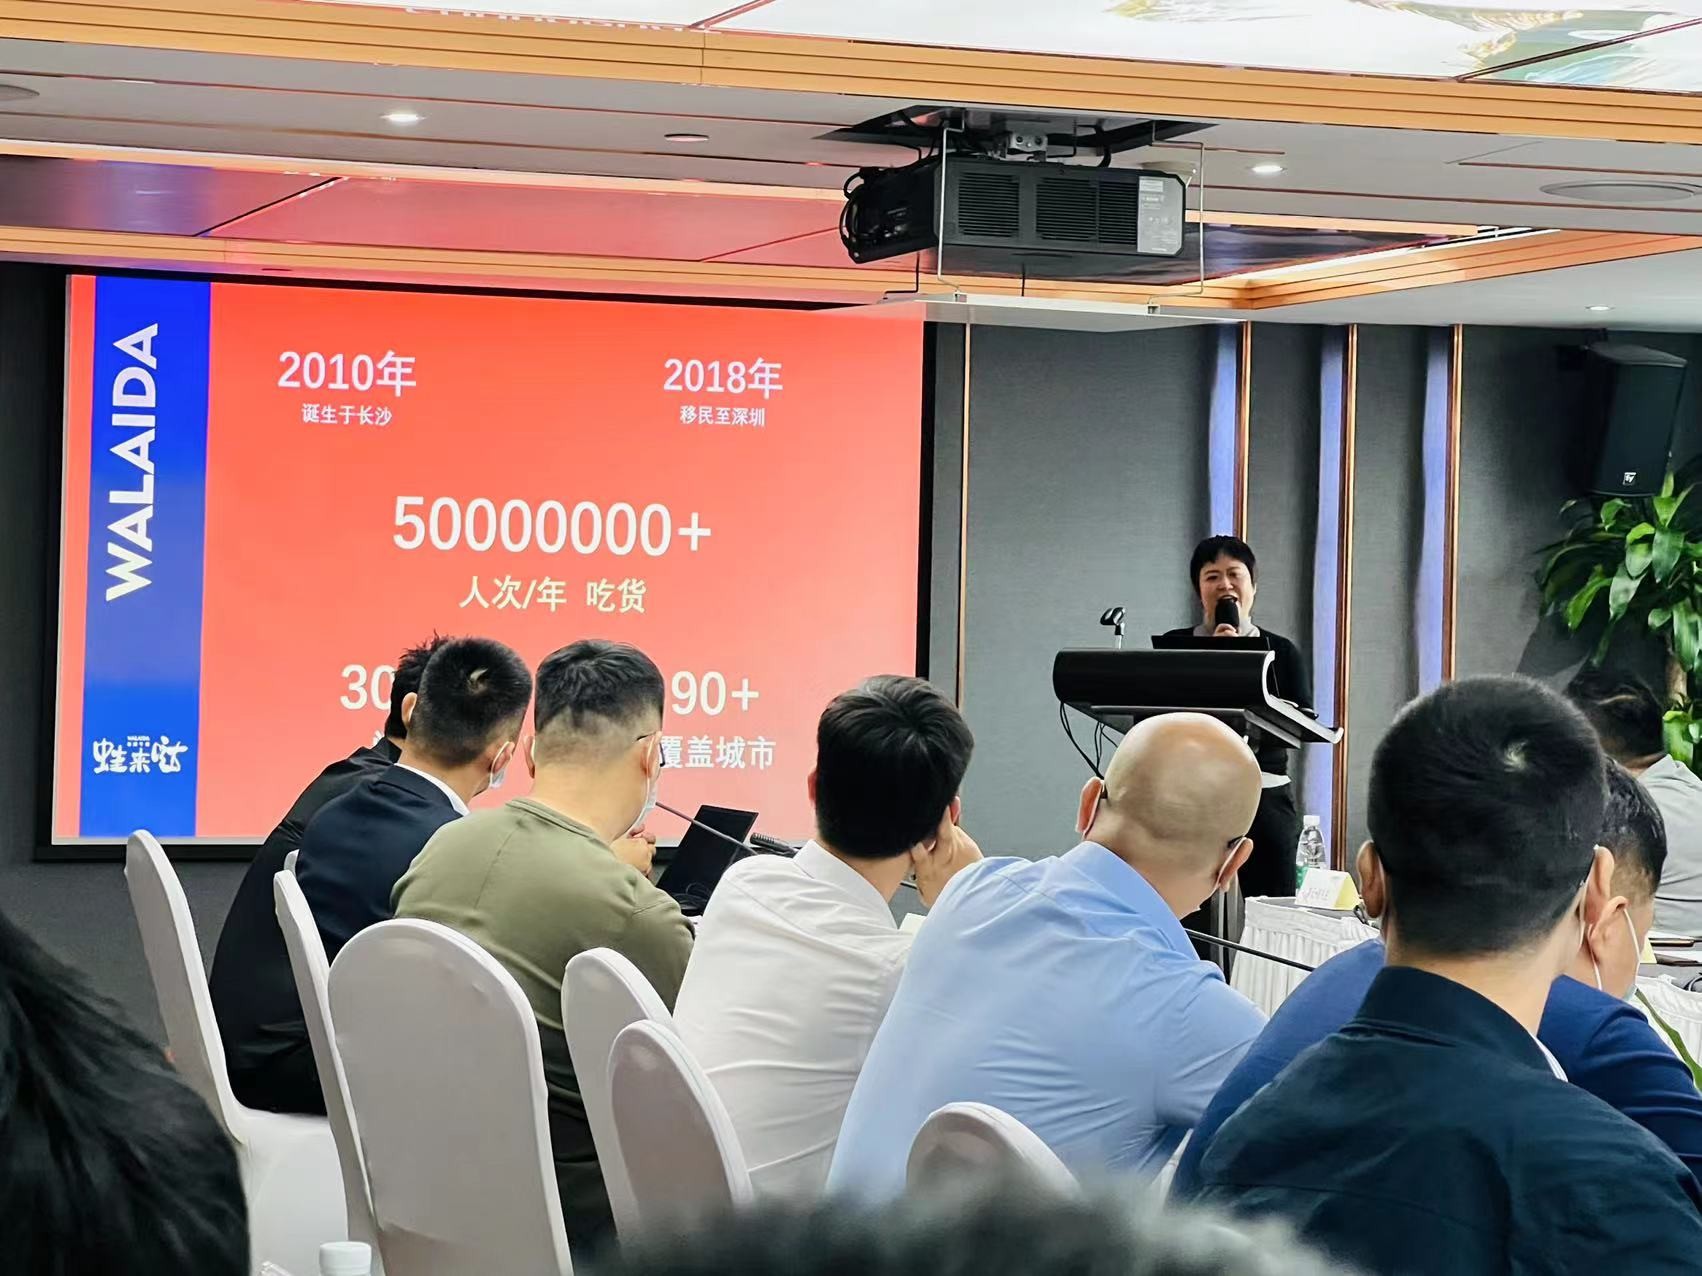 蛙来哒获2022深圳连锁餐企食安管理和品牌力评估“优秀单位”称号